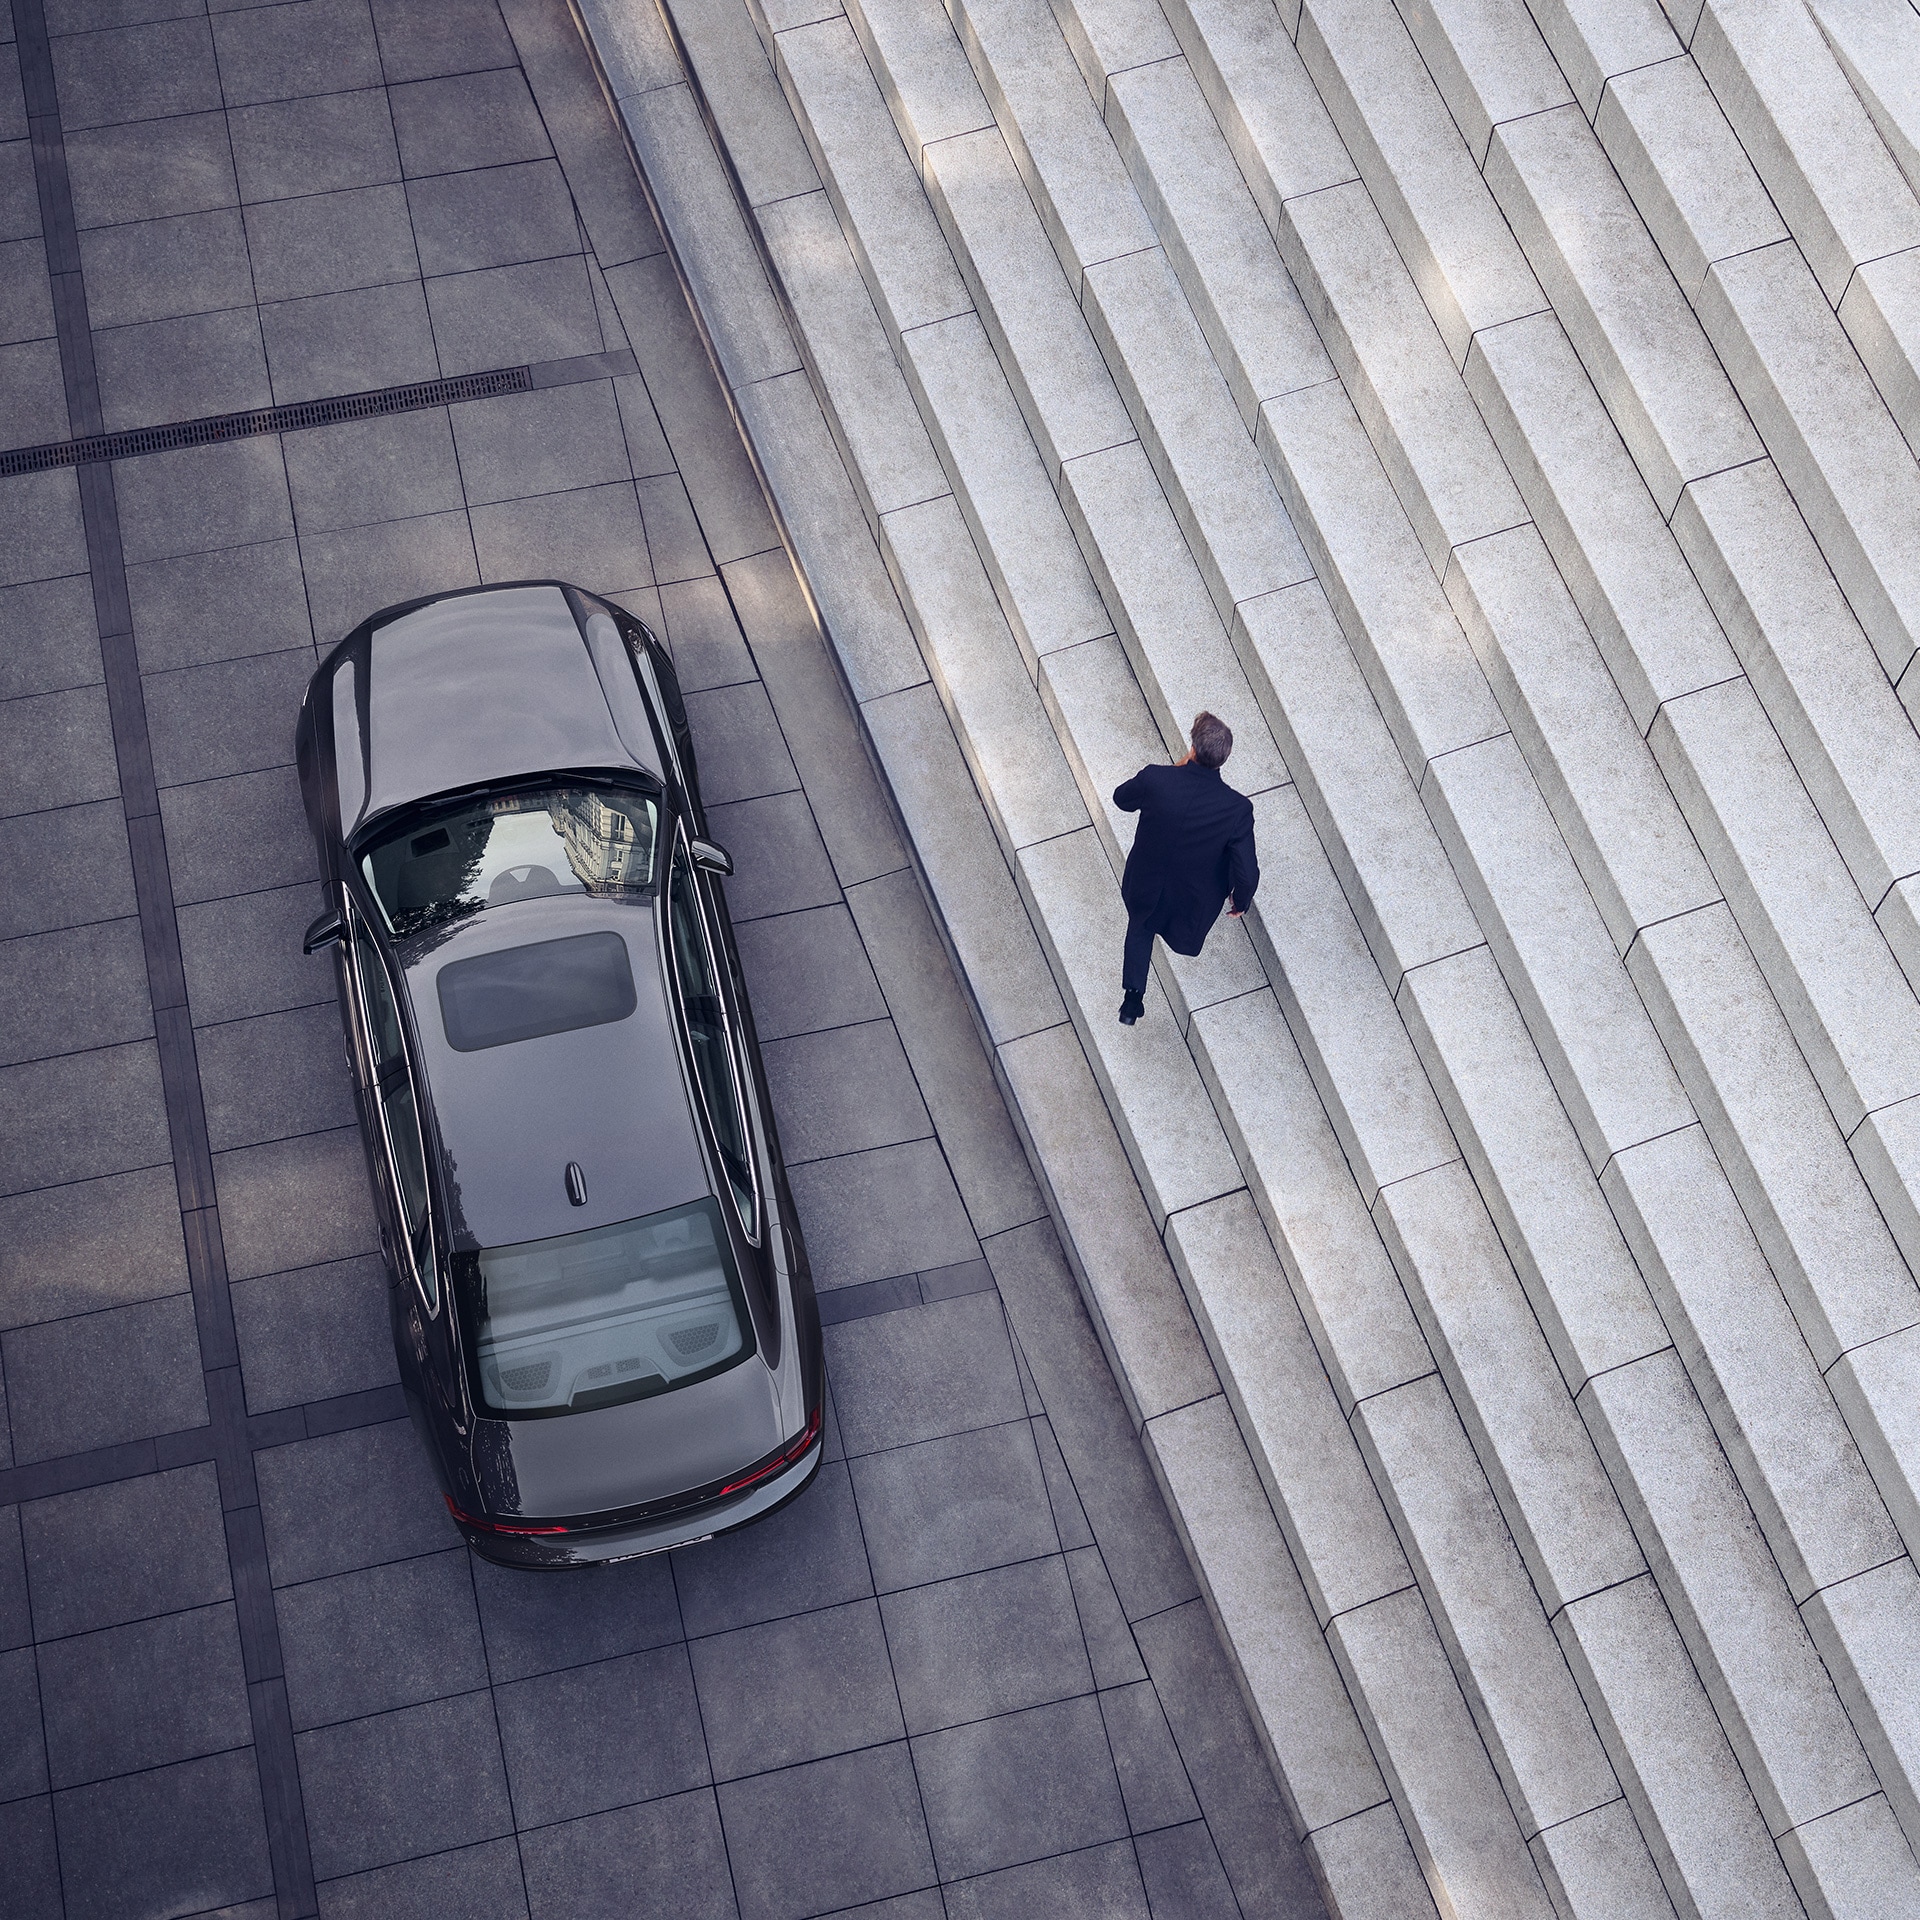 Volvo S90 garée devant un escalier, un homme s'éloigne de la voiture.